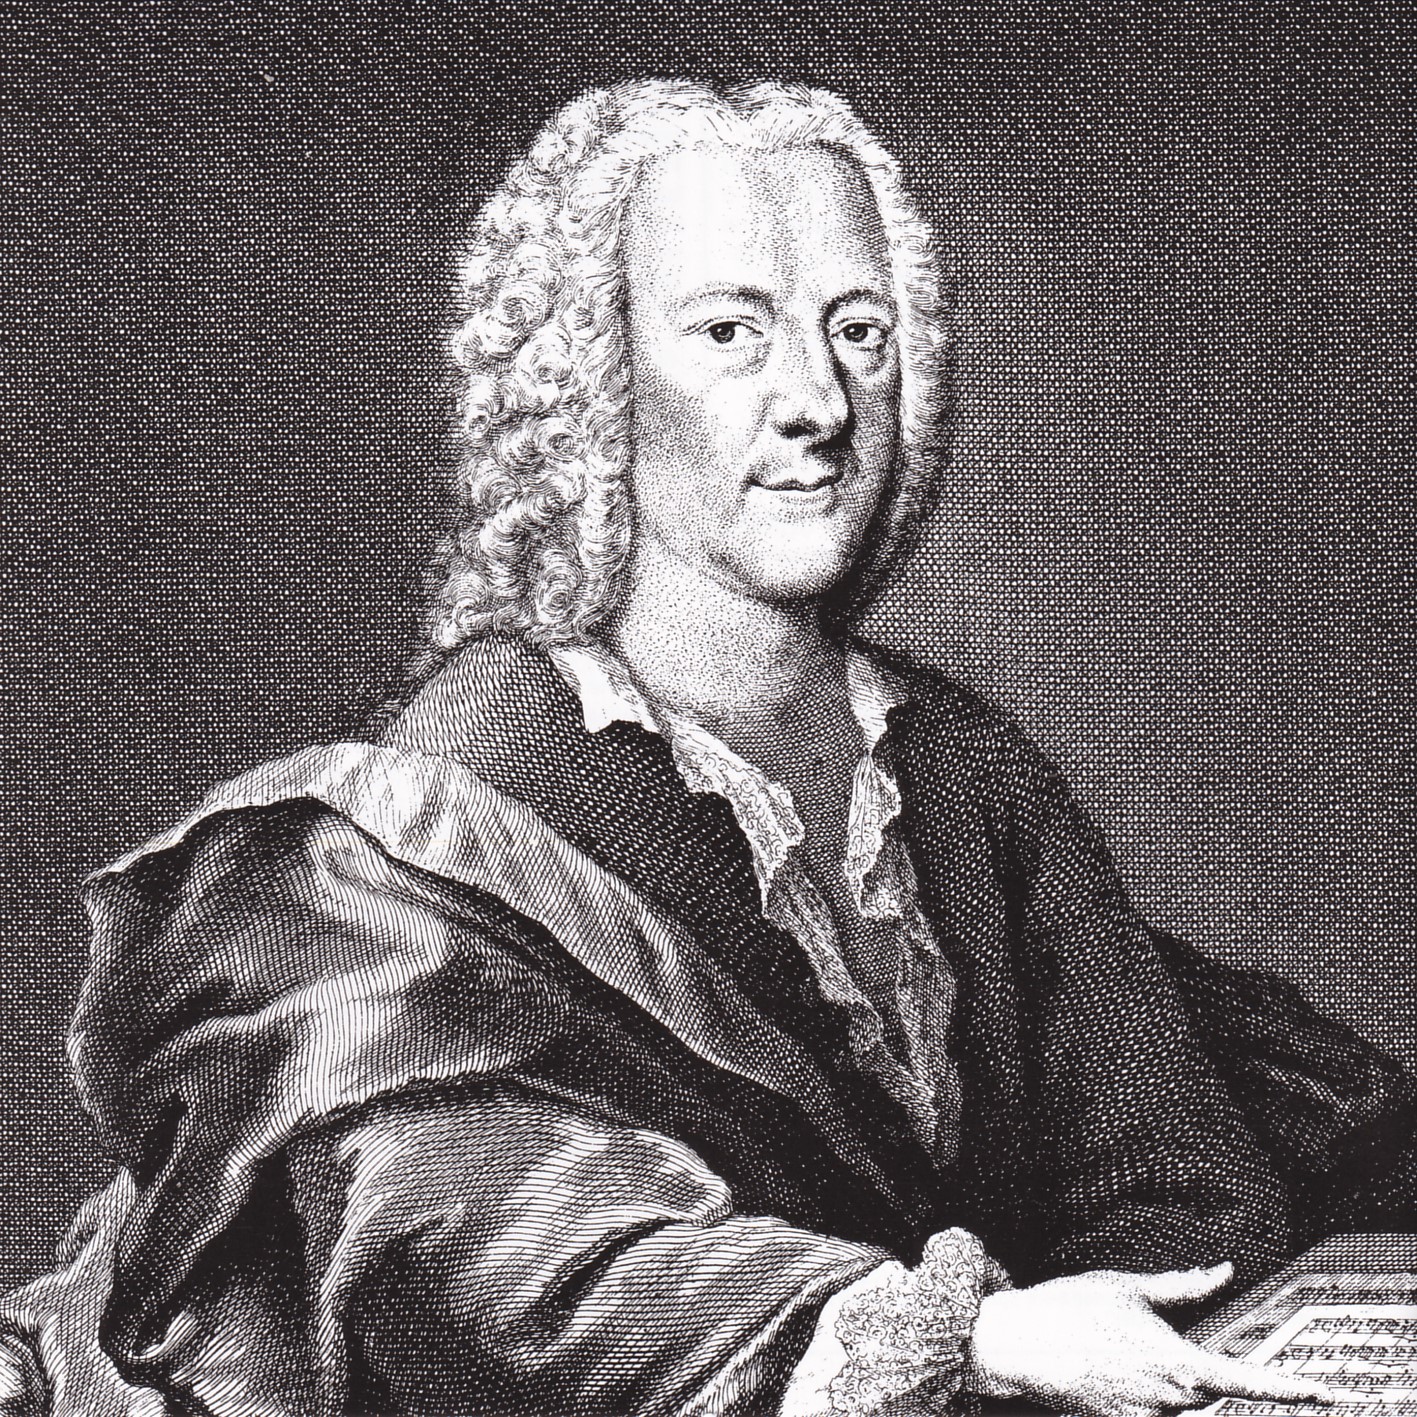 Georg Philipp Telemann - Trompetenkonzert